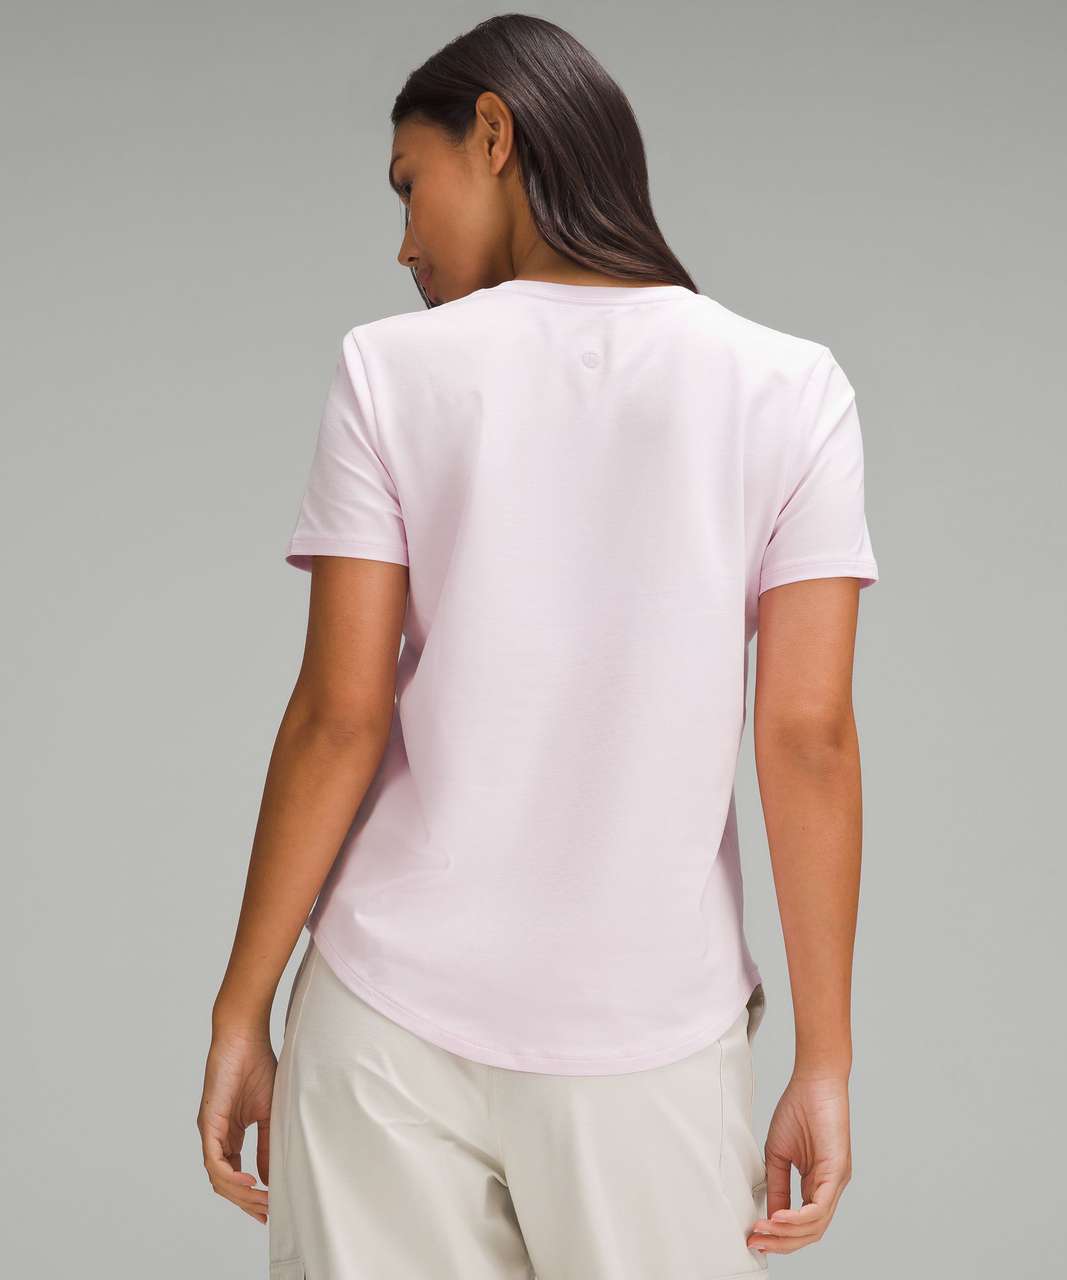 Lululemon Love V-Neck T-Shirt - Meadowsweet Pink